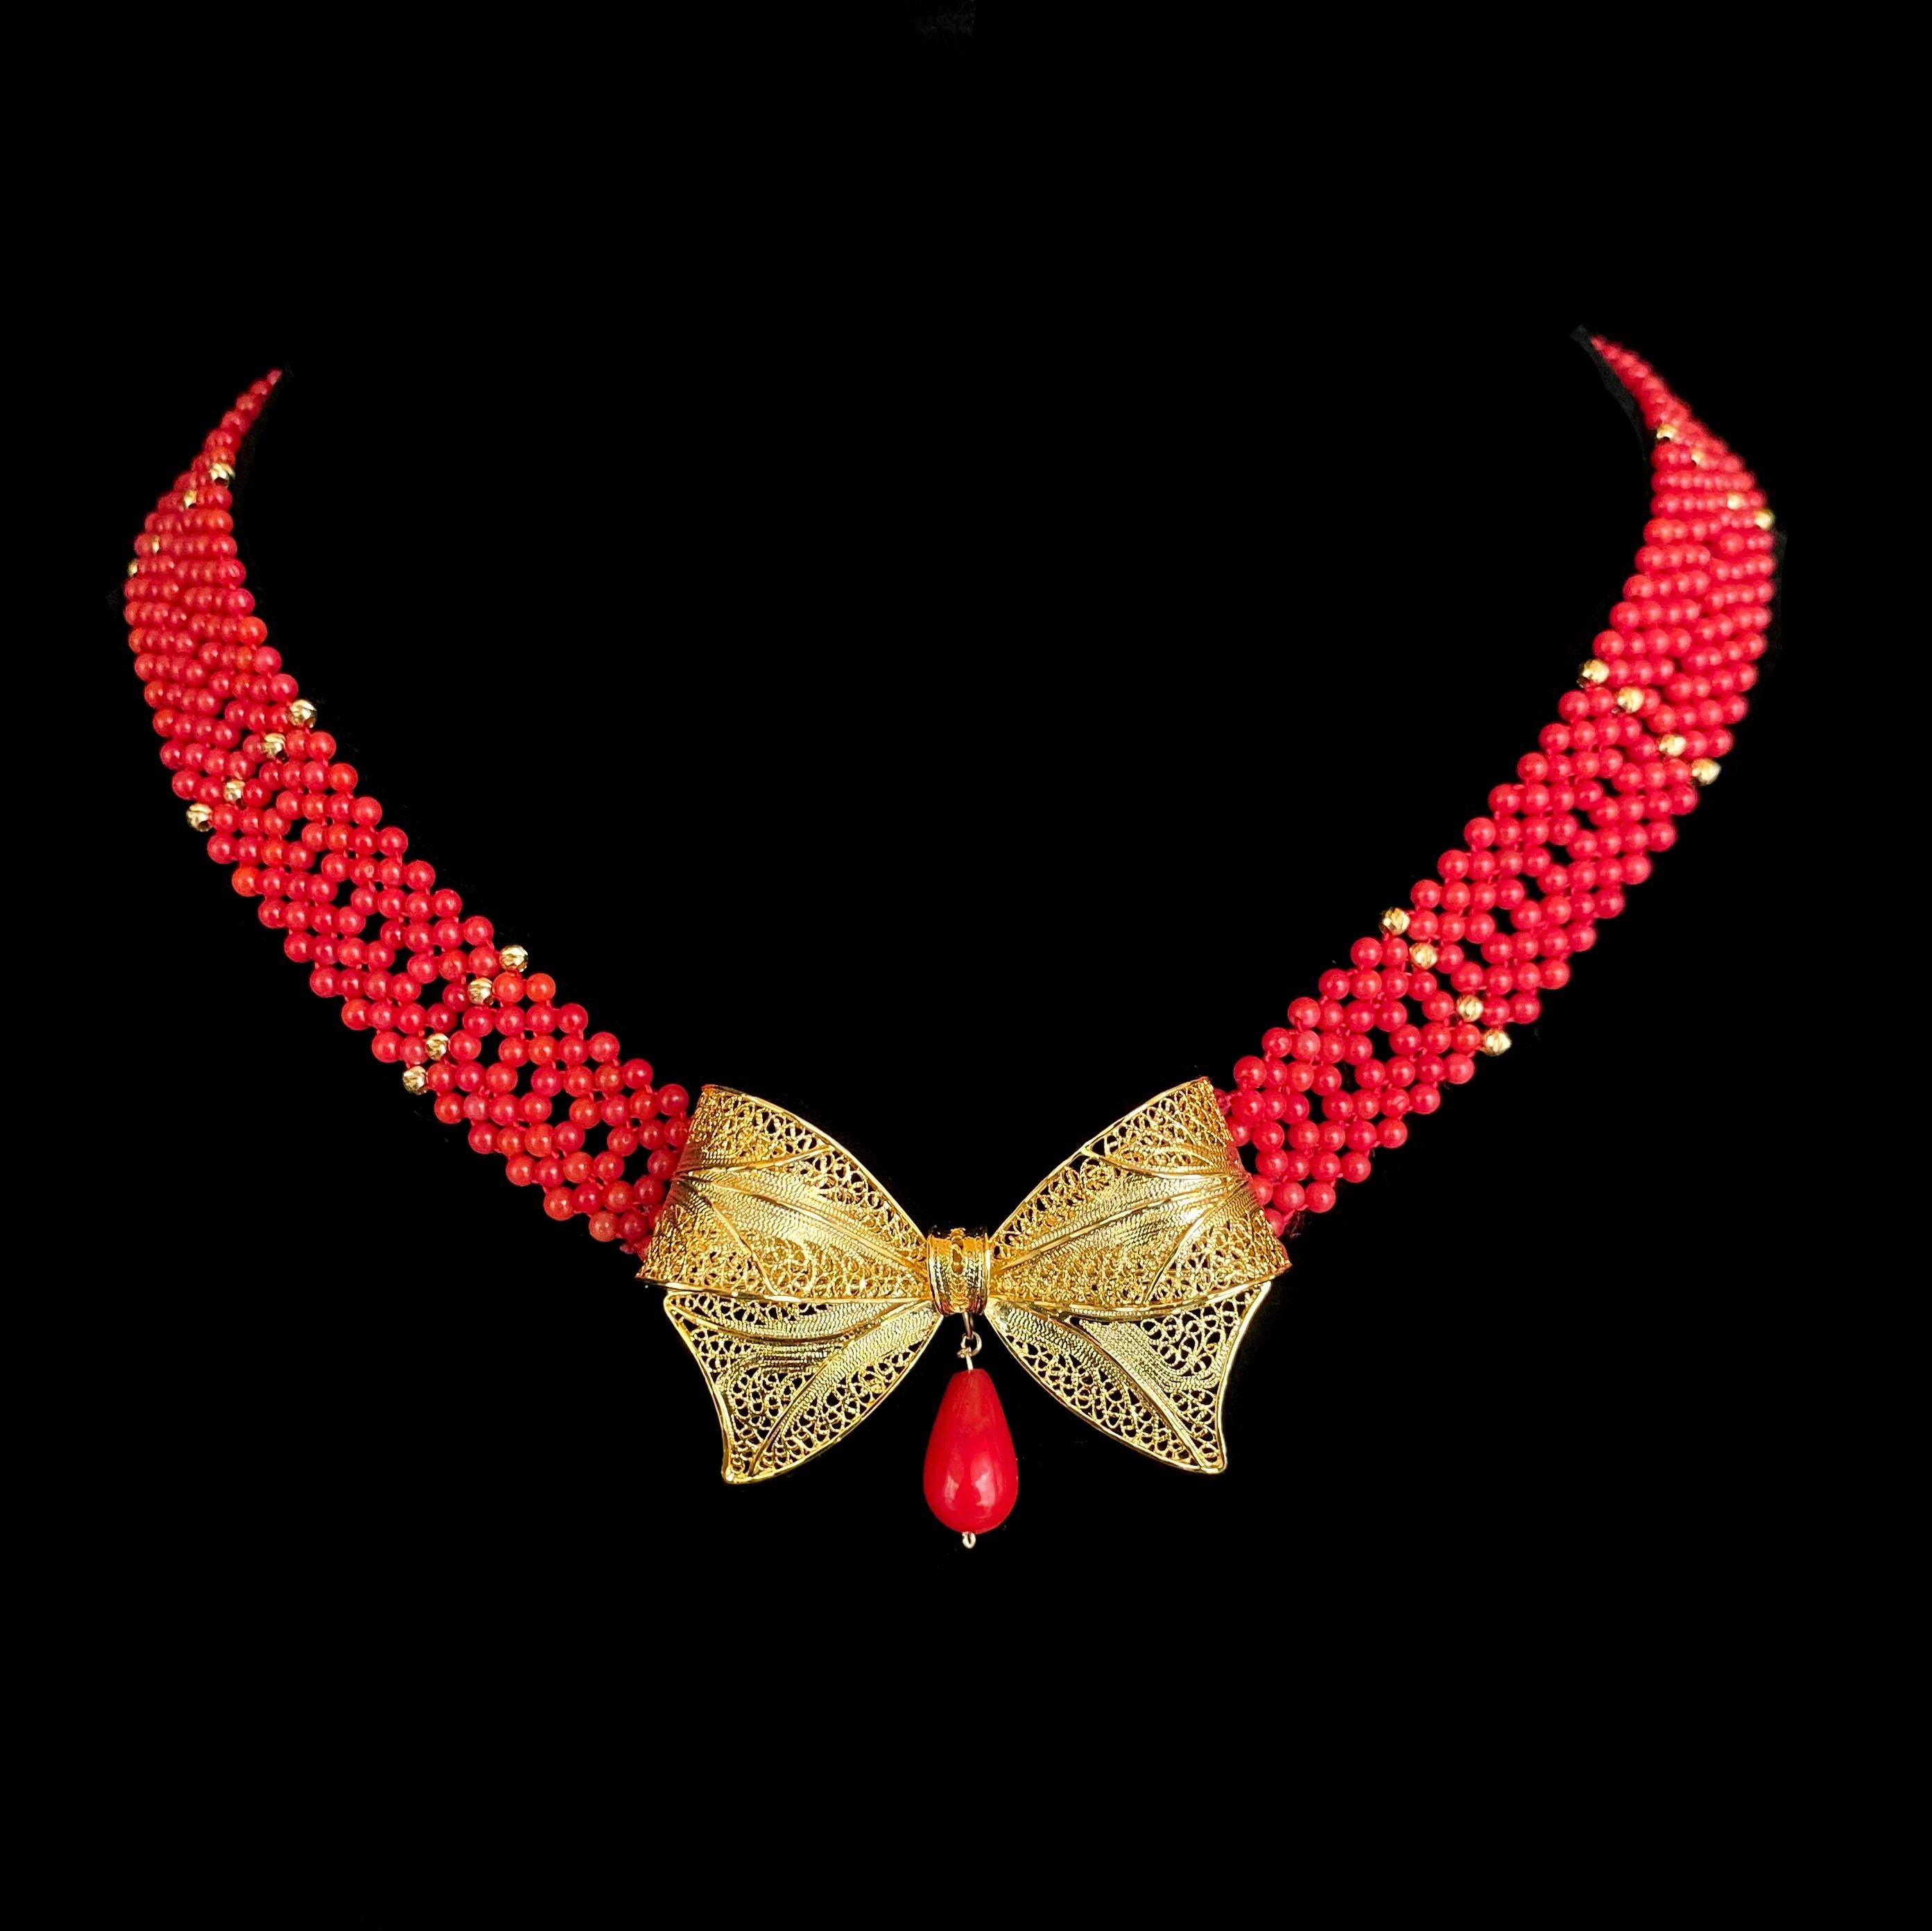 Wunderschönes Stück von Marina J. Diese Halskette besteht aus Korallenperlen, die in einem feinen, spitzenähnlichen Design miteinander verwoben sind. Die lebhafte rote Koralle steht in perfektem Kontrast zu den facettierten, 18-karätigen,